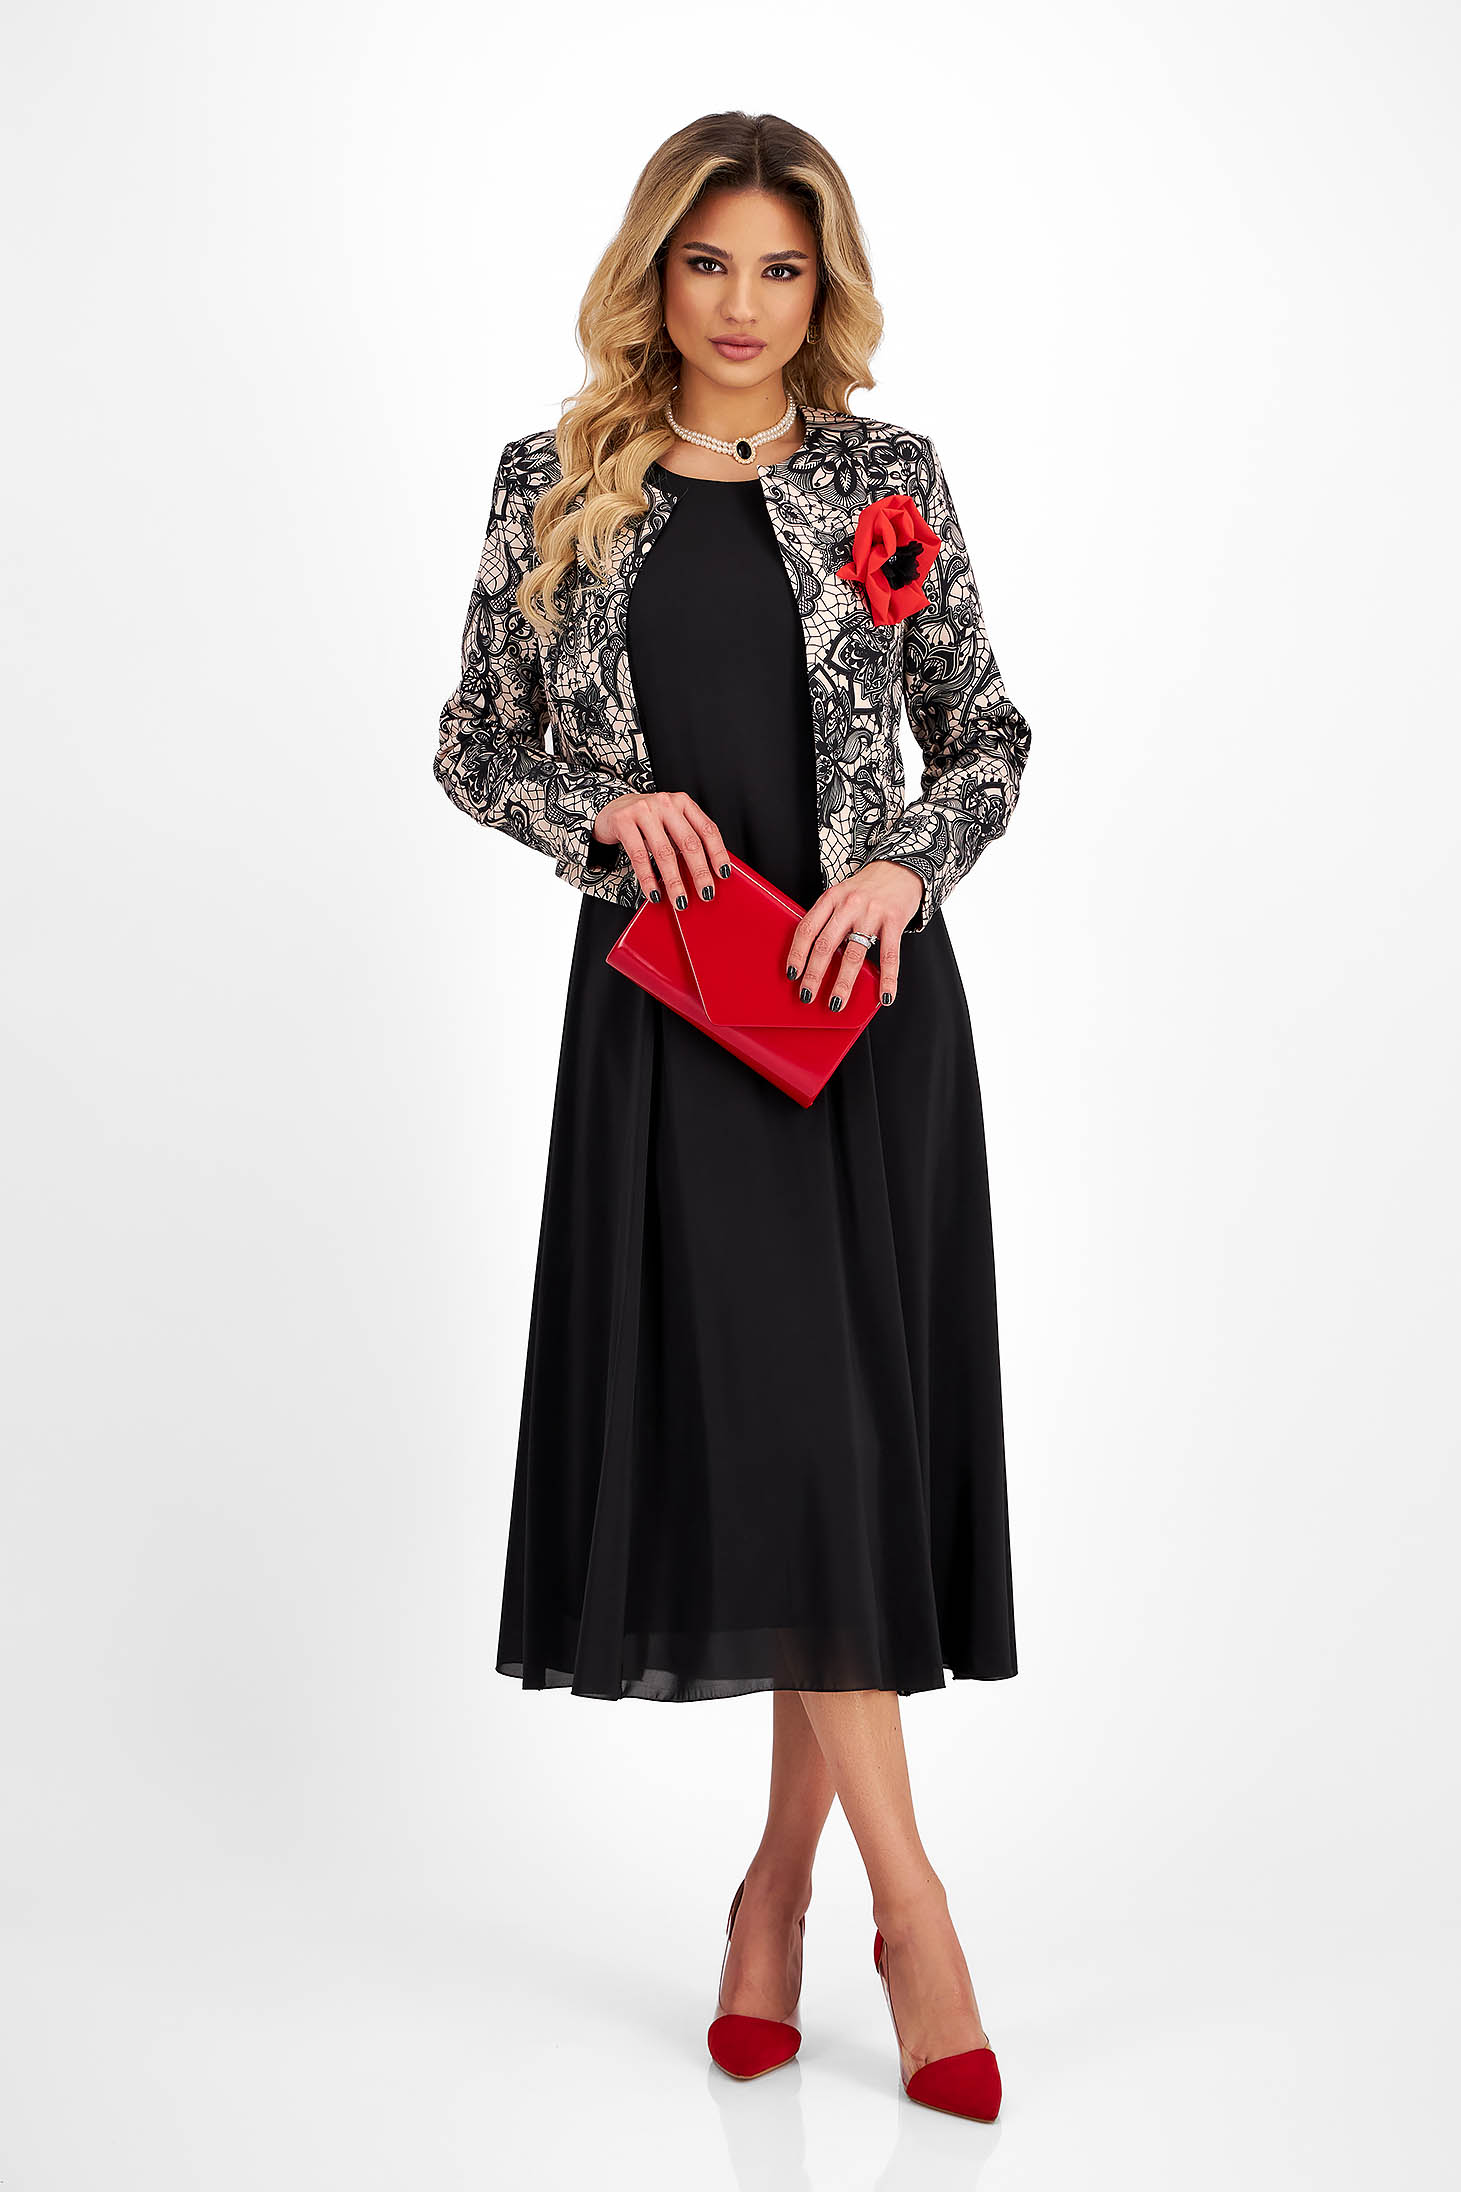 Muszlin és rugalmas szövetü női kosztüm - fekete, bross kiegészítővel - StarShinerS 4 - StarShinerS.hu